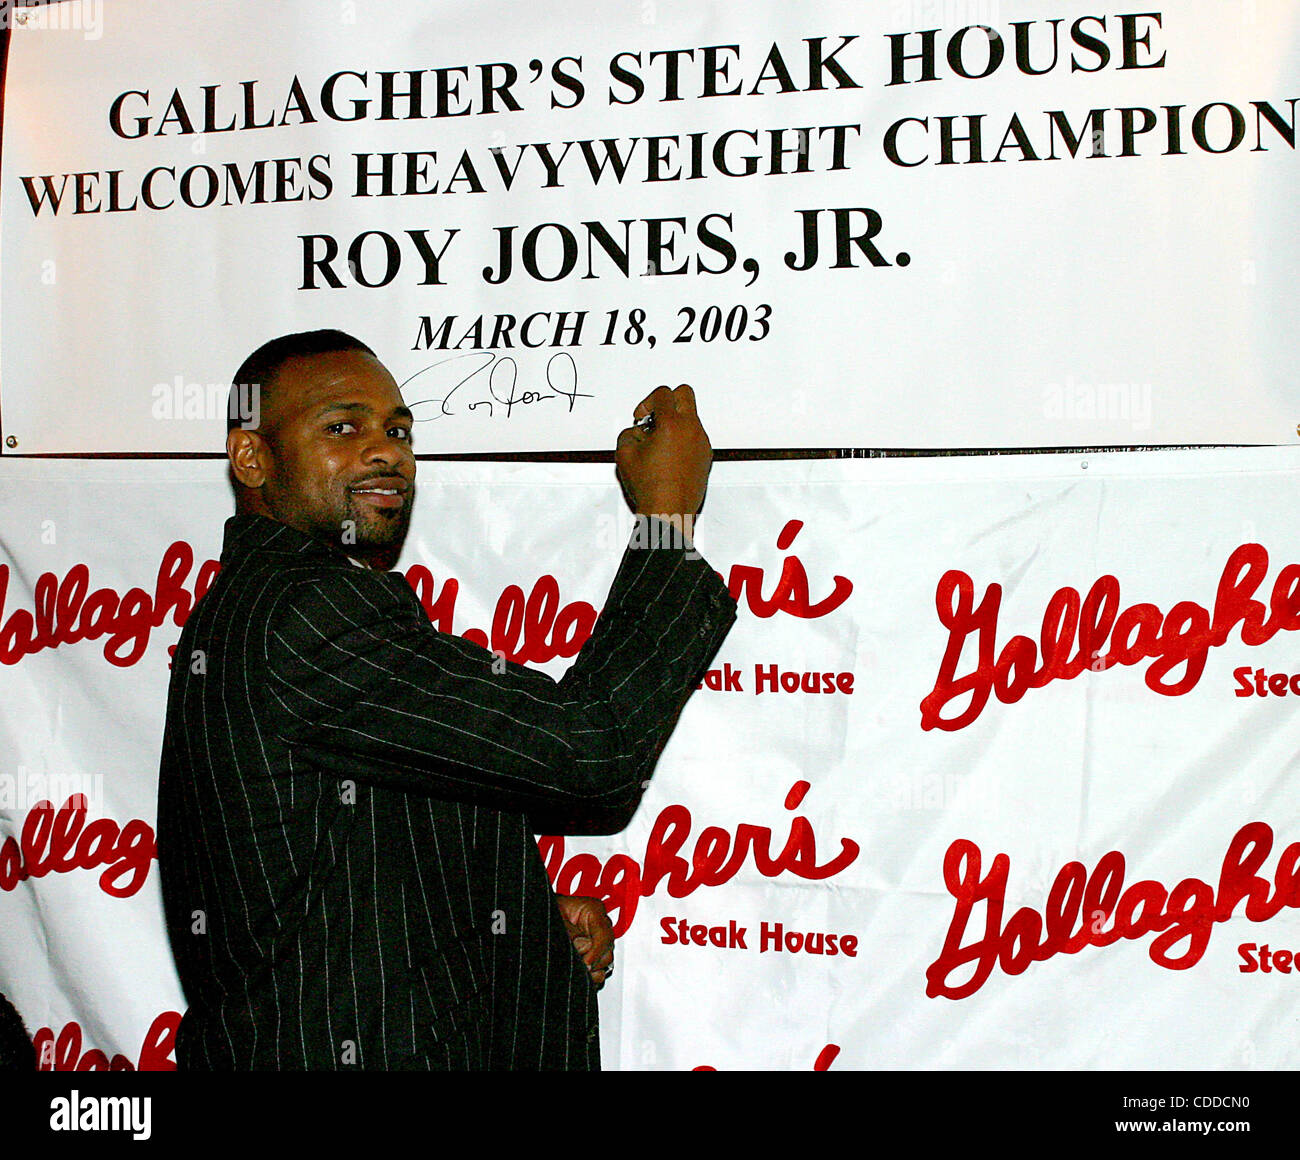 El 1 de enero, 2011 - Nueva York, Nueva York, EE.UU. - K29659RM0318 SD.''Gallagher's Steak House'' CELEBRA CAMPEÓN DE PESO PESADO en tres categorías de peso ''ROY JONES, JR''. .El 33-años de viejas cortinas A SÍ MISMO CON NO MENOS DE SEIS CORREAS EN UN TÍTULO PUBLINew York PREGONABA EN NUEVA YORK Nueva York. / 2003(Credit Foto de stock